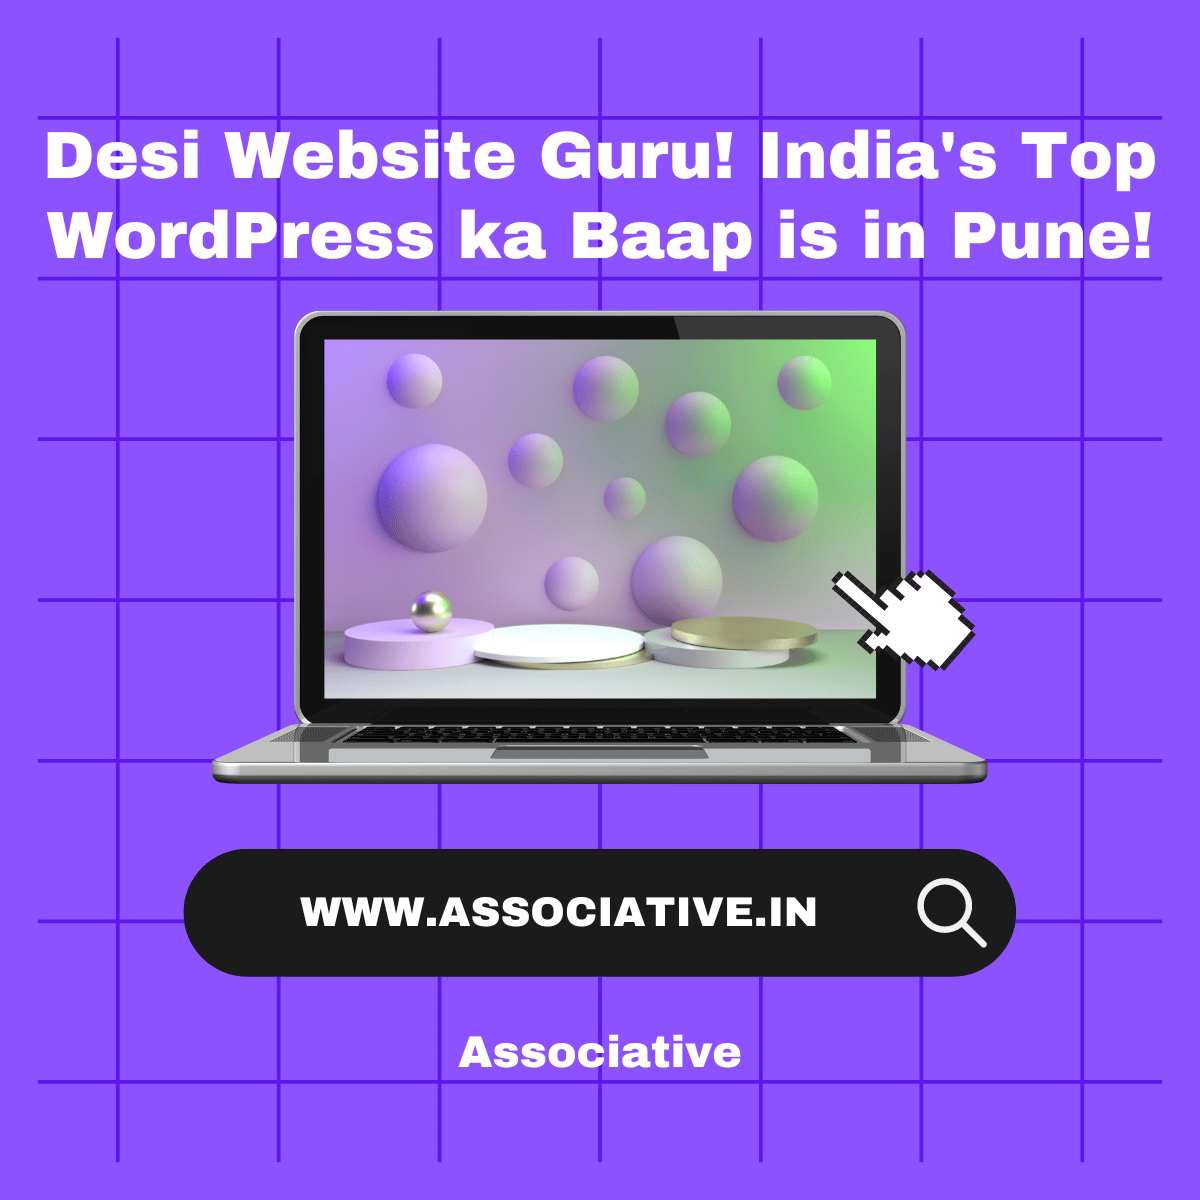 Desi Website Guru! India's Top WordPress ka Baap is in Pune!